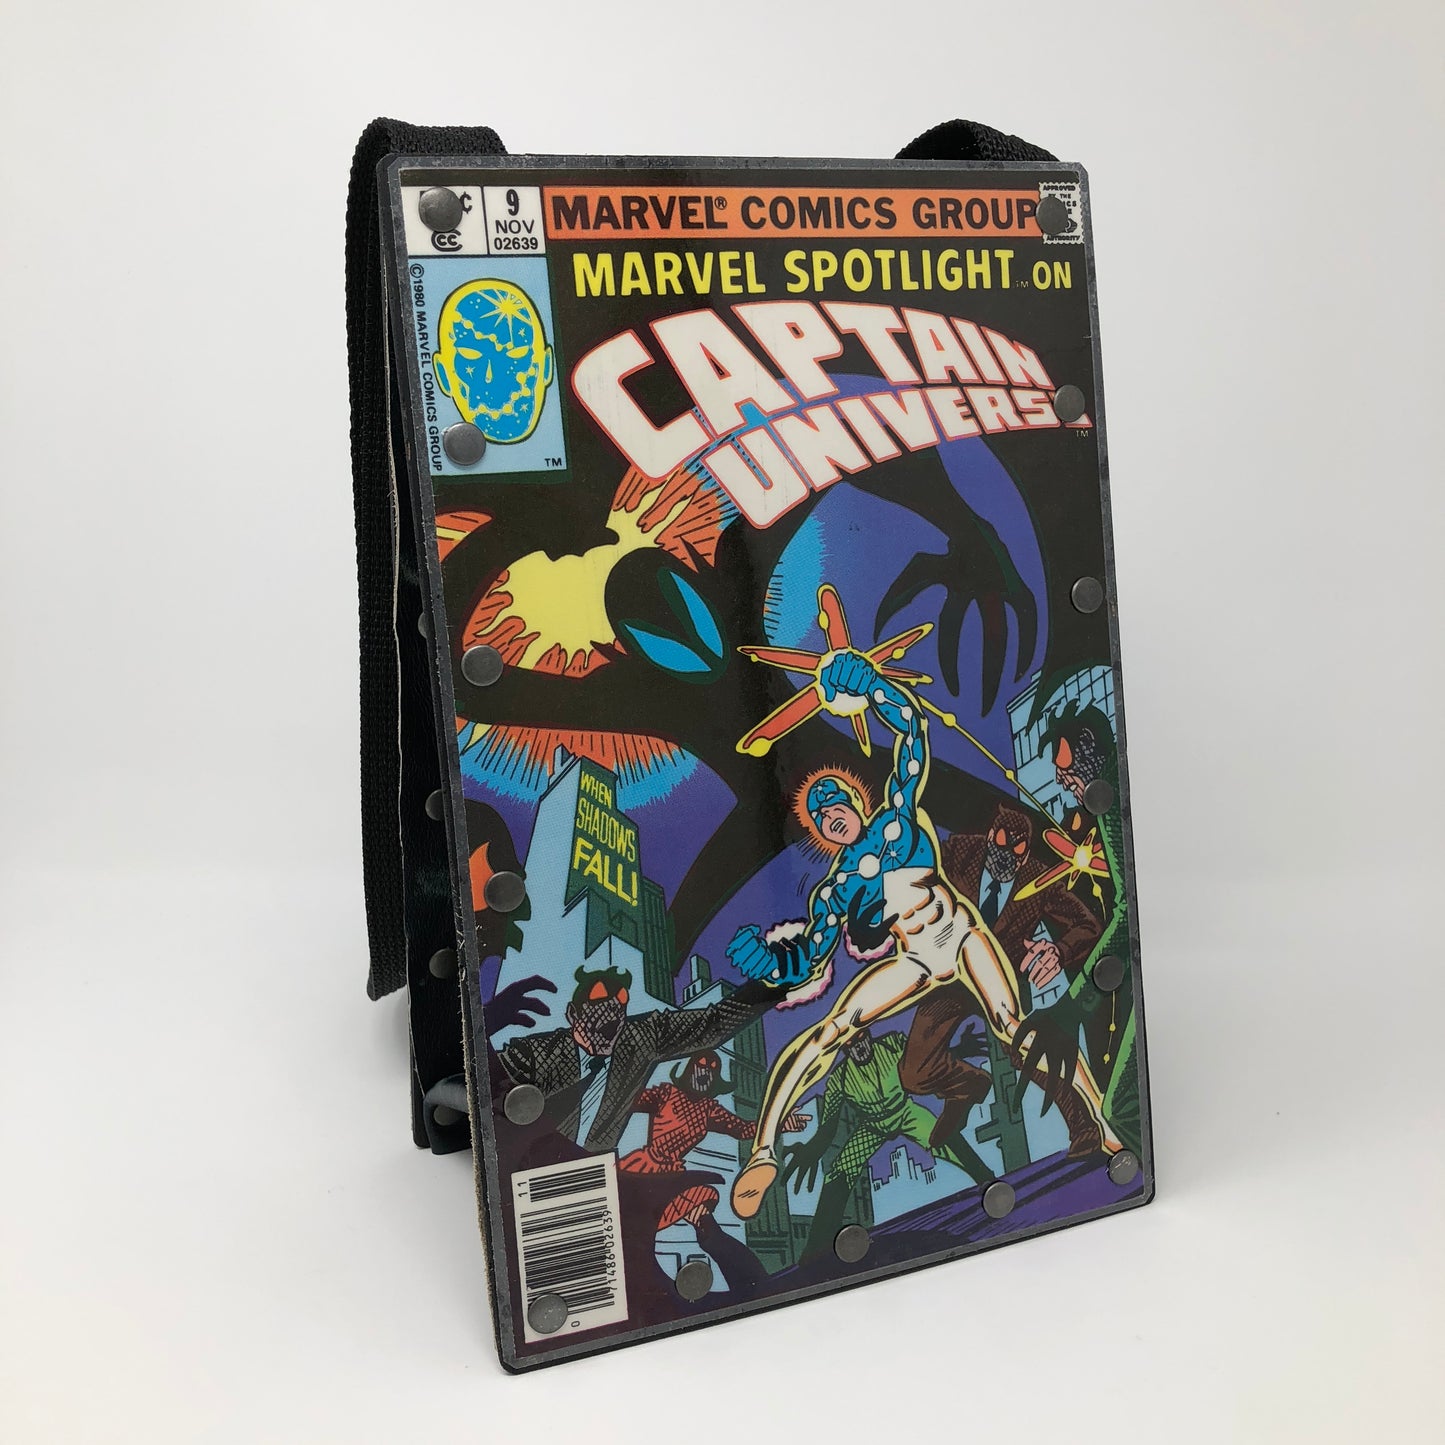 Vintage Comic Book Purse - Captain Universe 1980